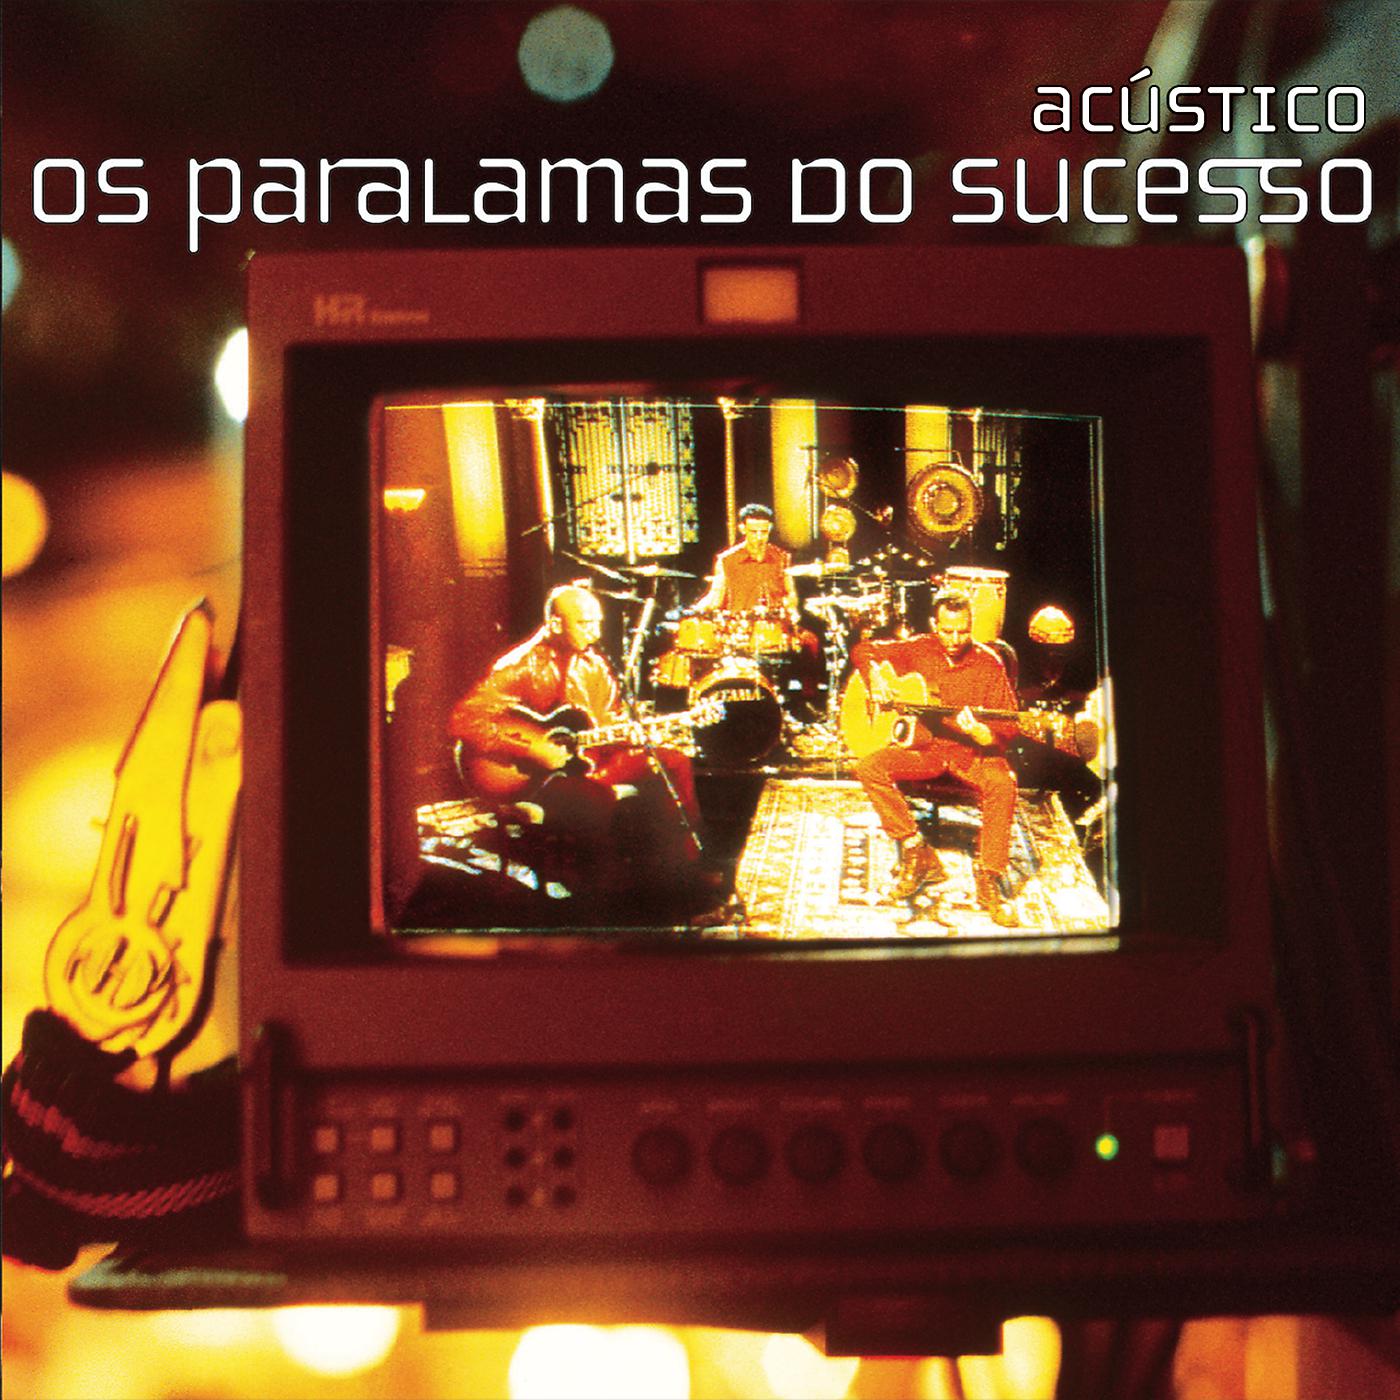 Альбом Acústico исполнителя Os Paralamas do Sucesso